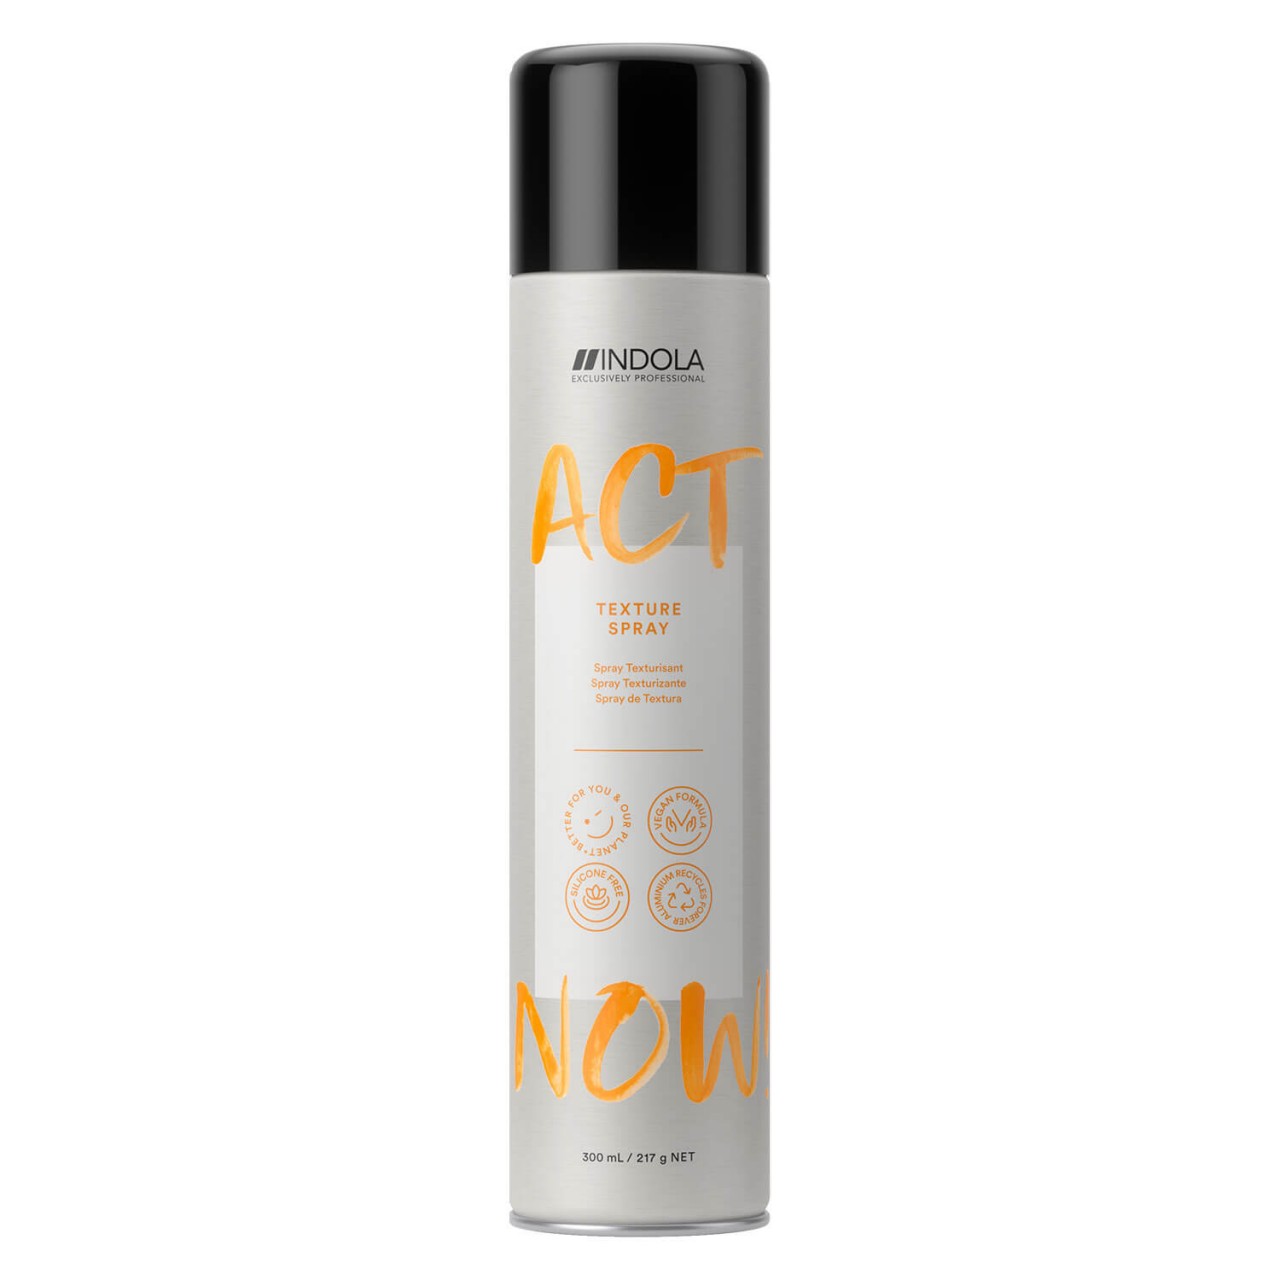 ACT NOW - Texture Spray von Indola